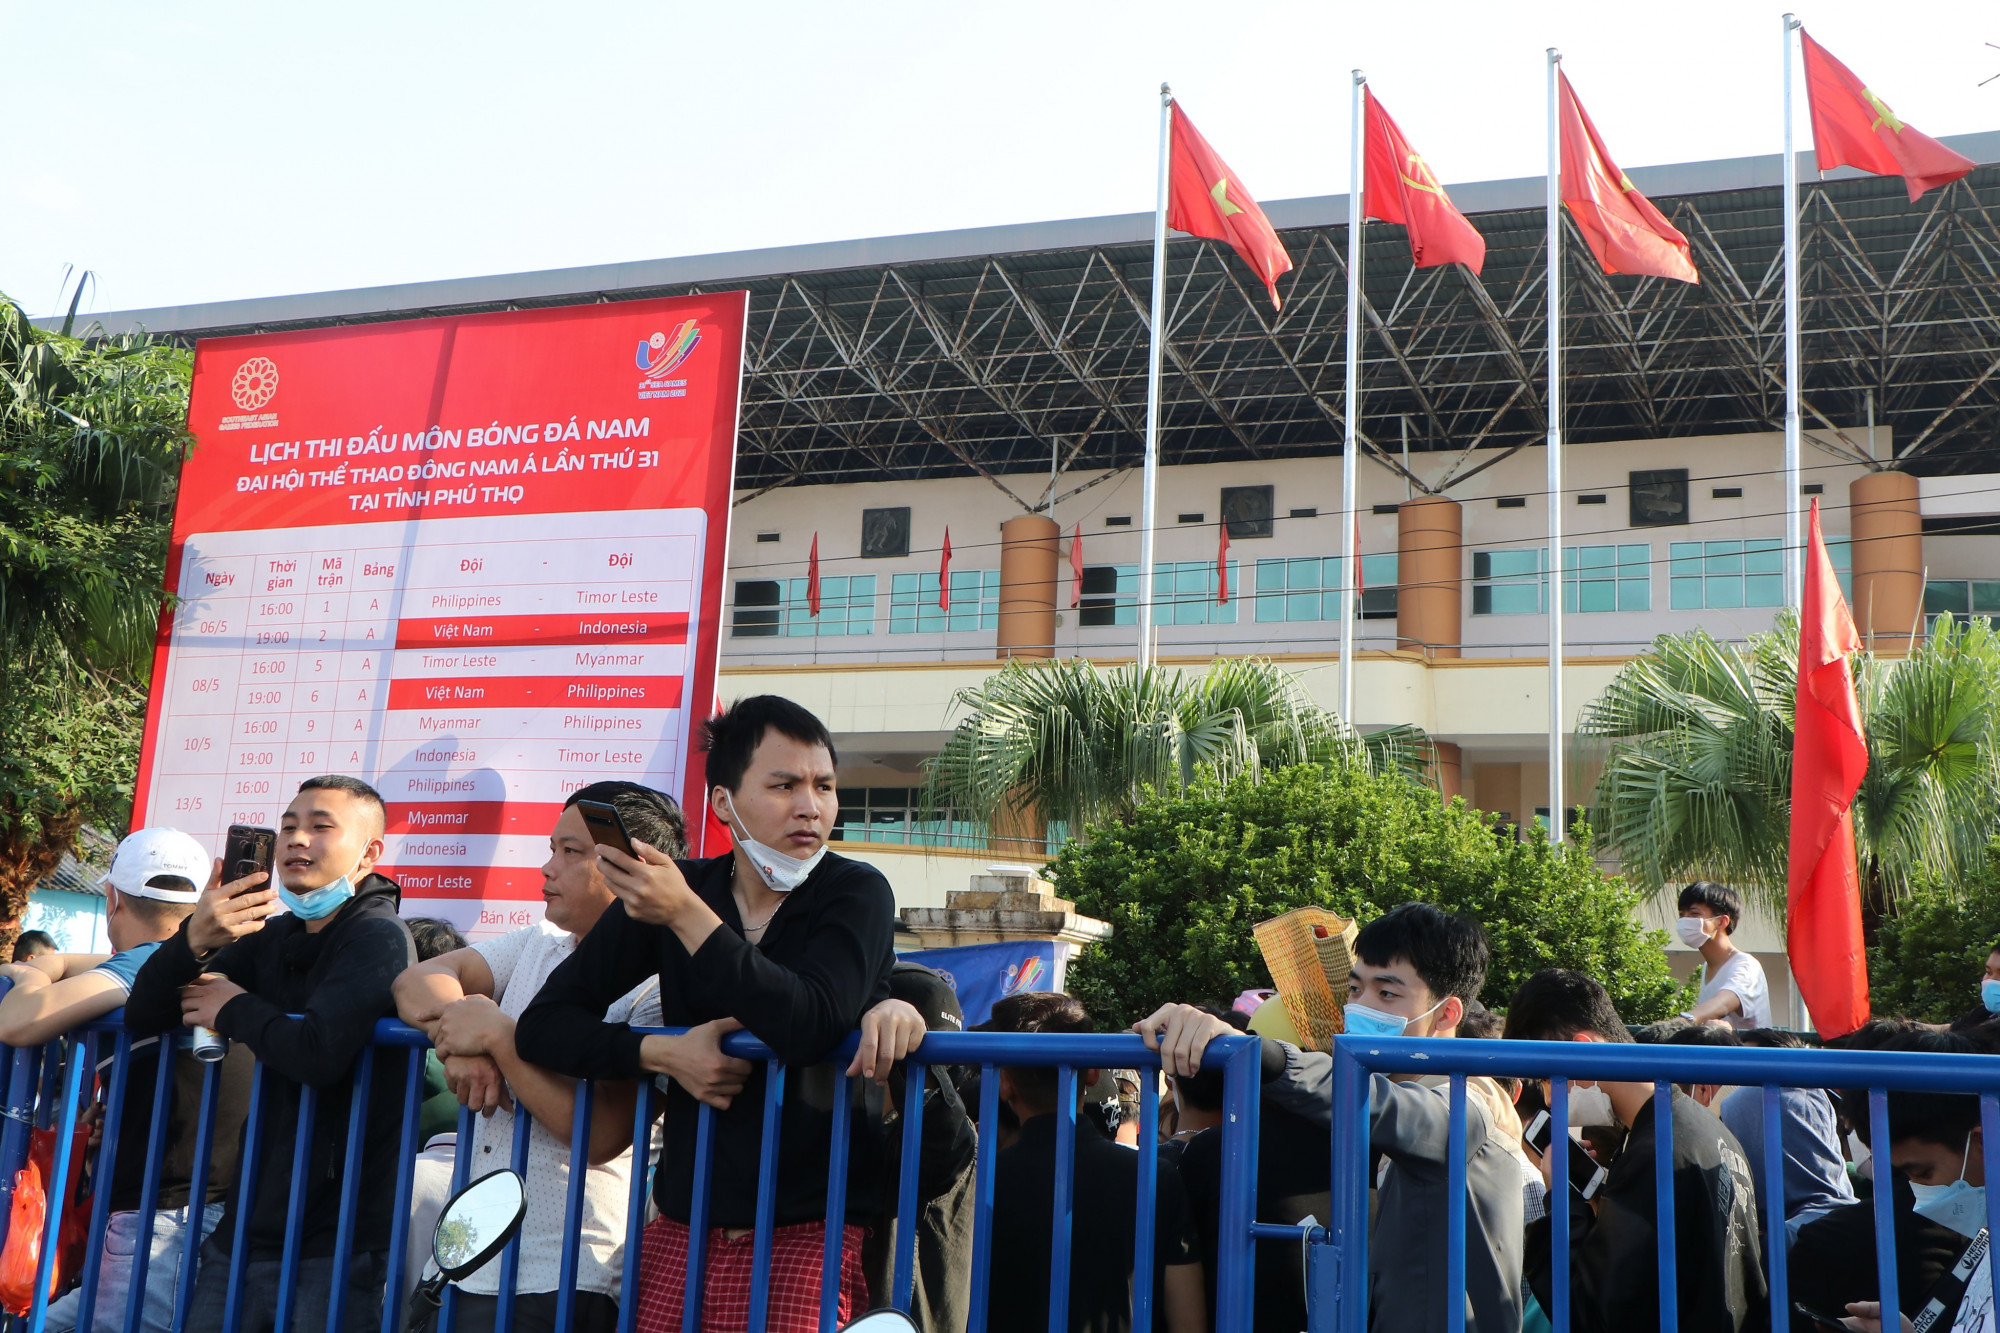 Ngay từ 5-6h sáng, đoàn người xếp hàng kéo dài bên ngoài khuôn viên SVĐ Việt Trì và Nhà thi đấu tỉnh Phú Thọ. 